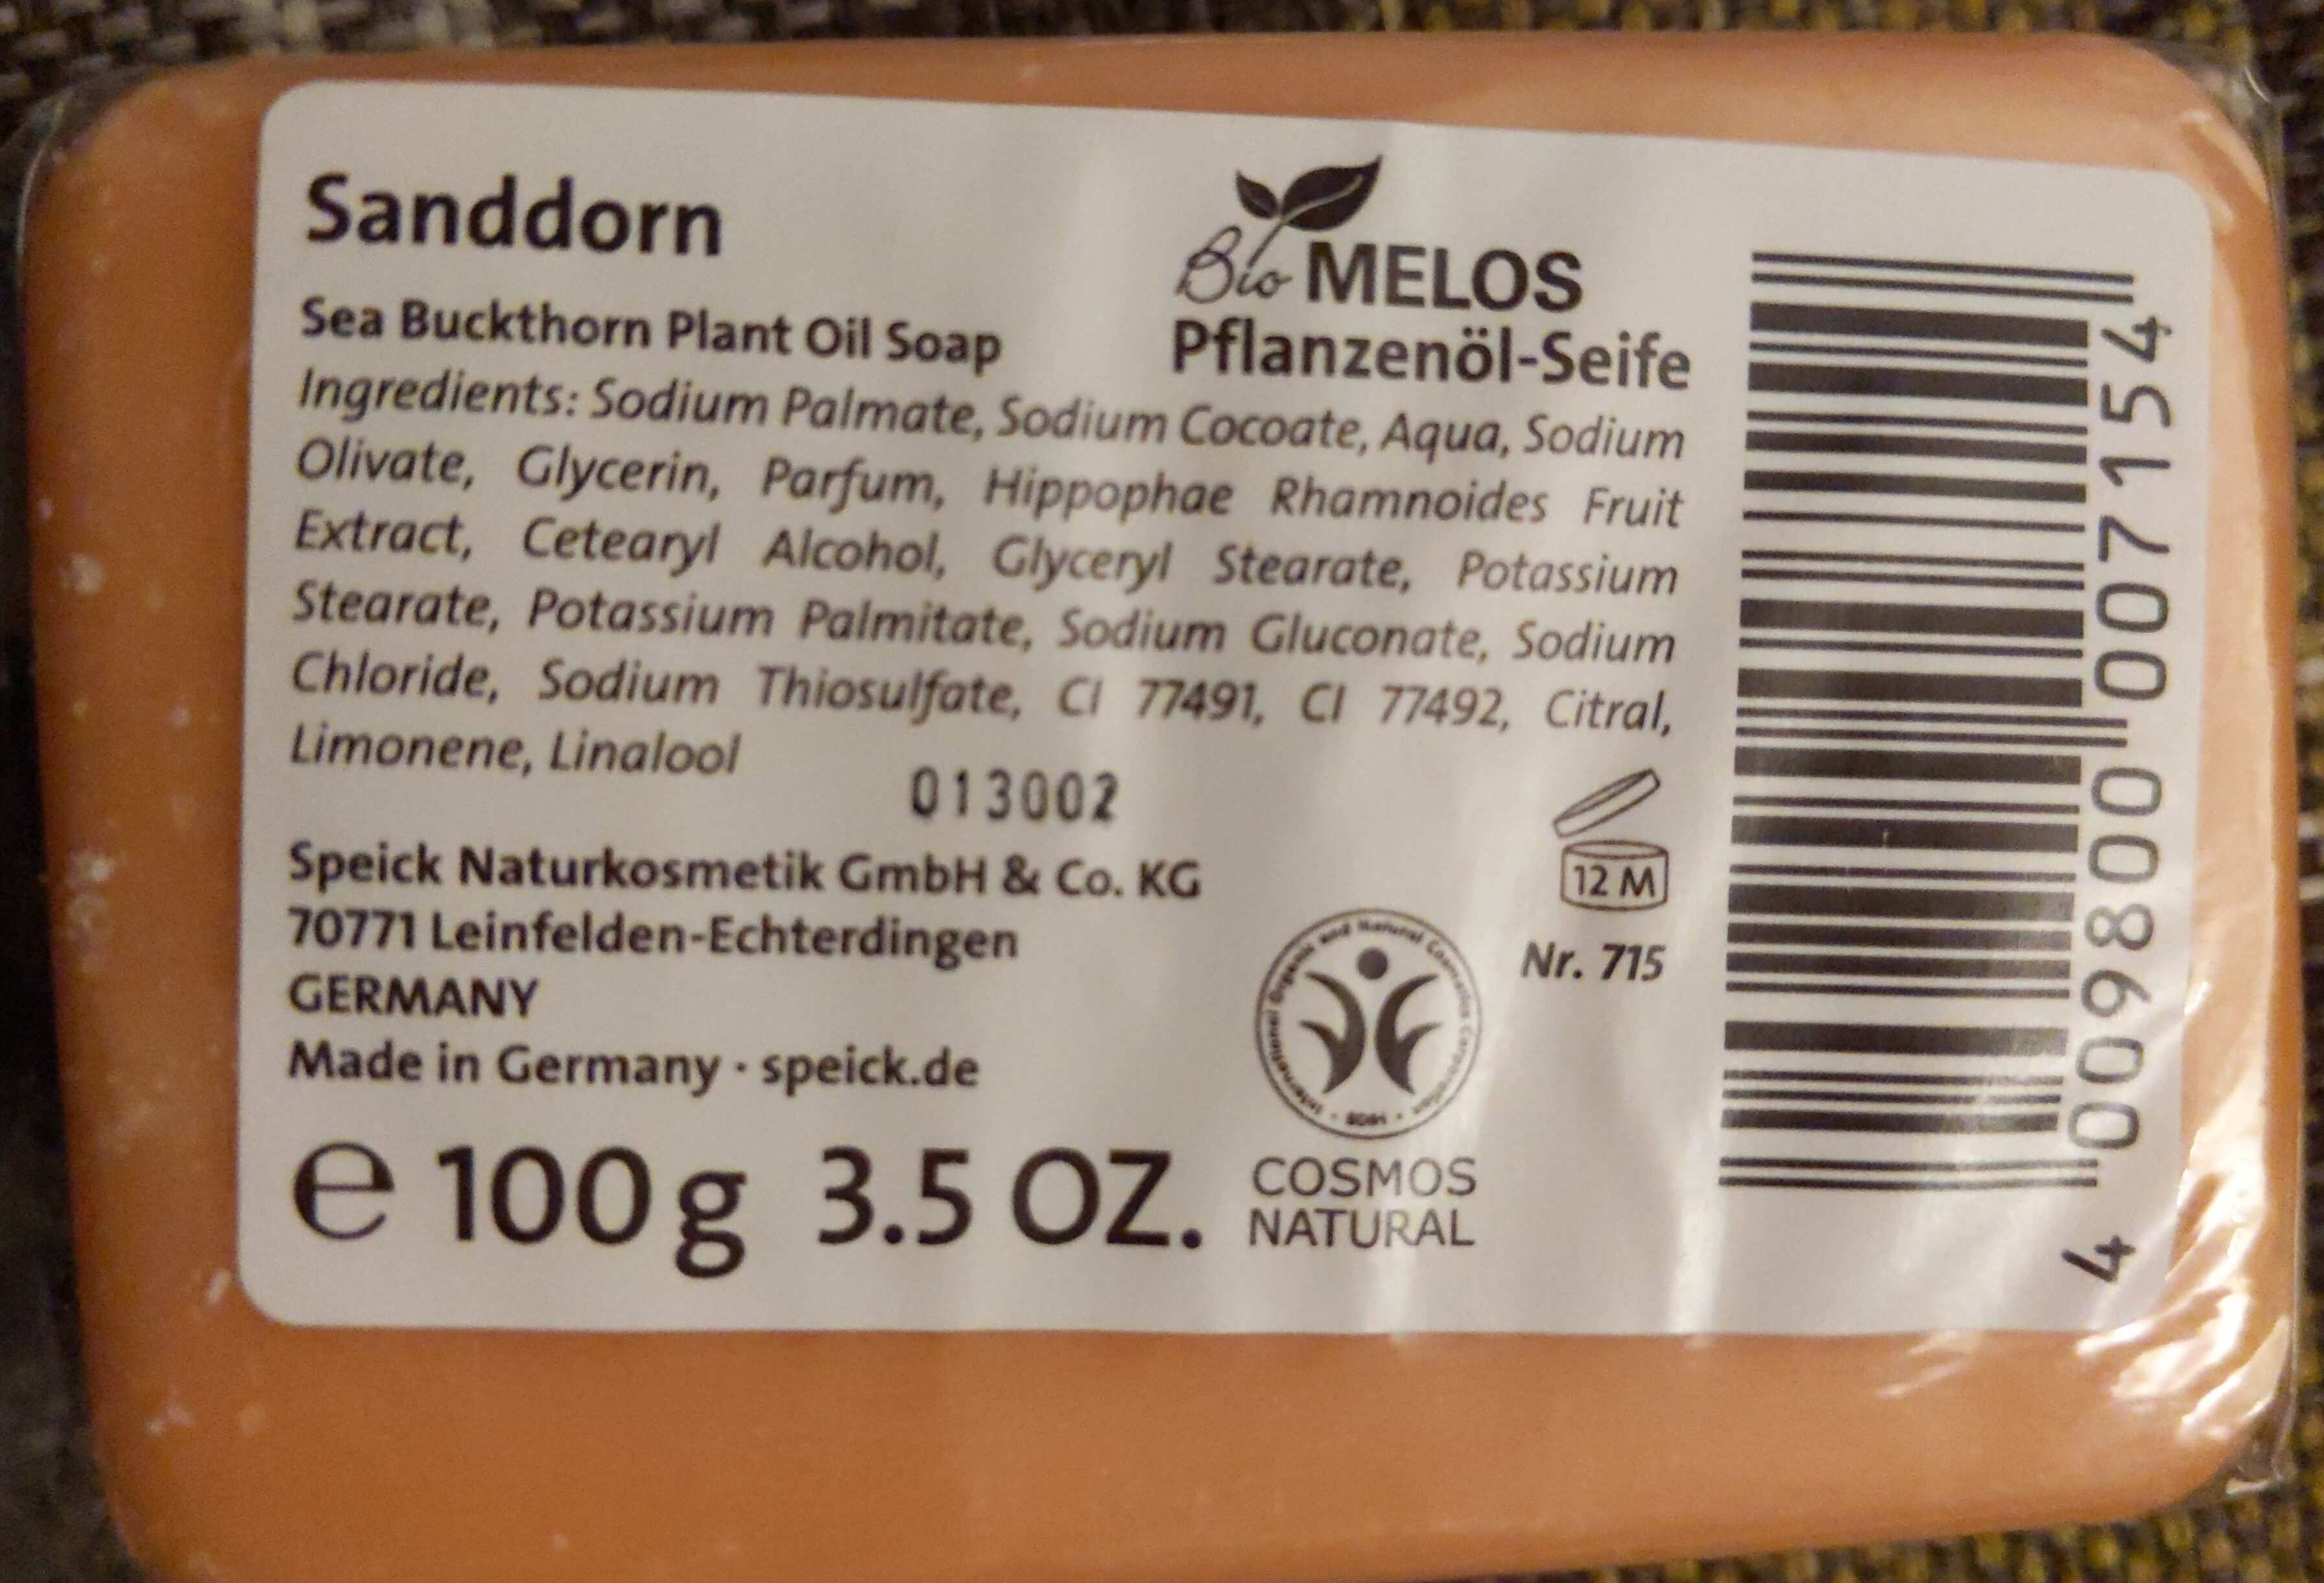 Bio Melos Sanddorn - Product - en